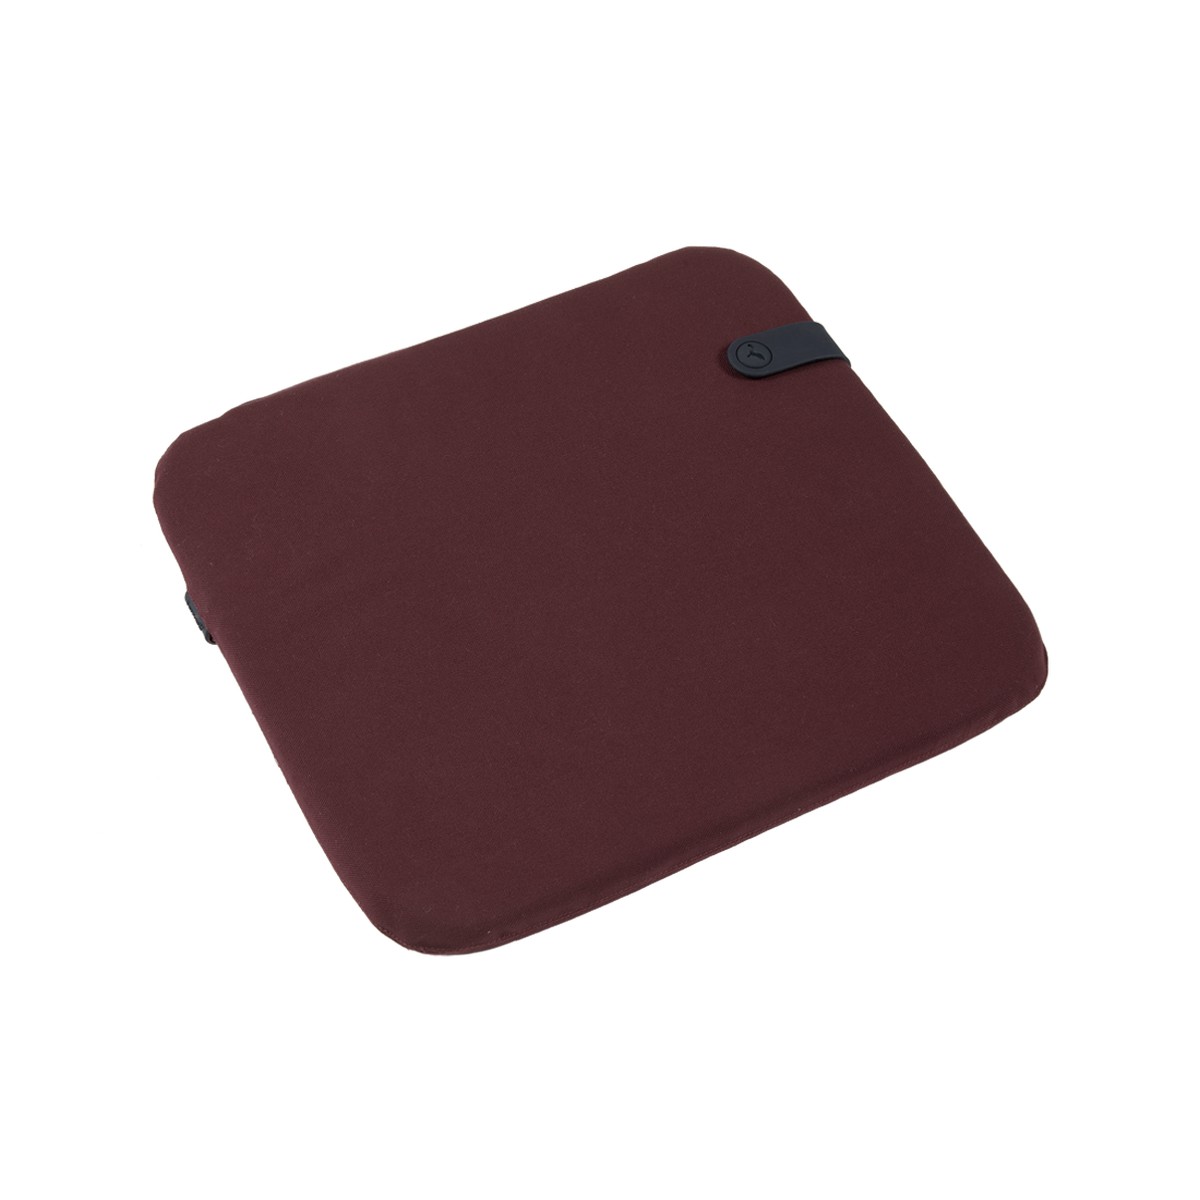 Fermob Color Mix Coussin Outdoor chaise Rouge bordeaux L 41 x l 38cm